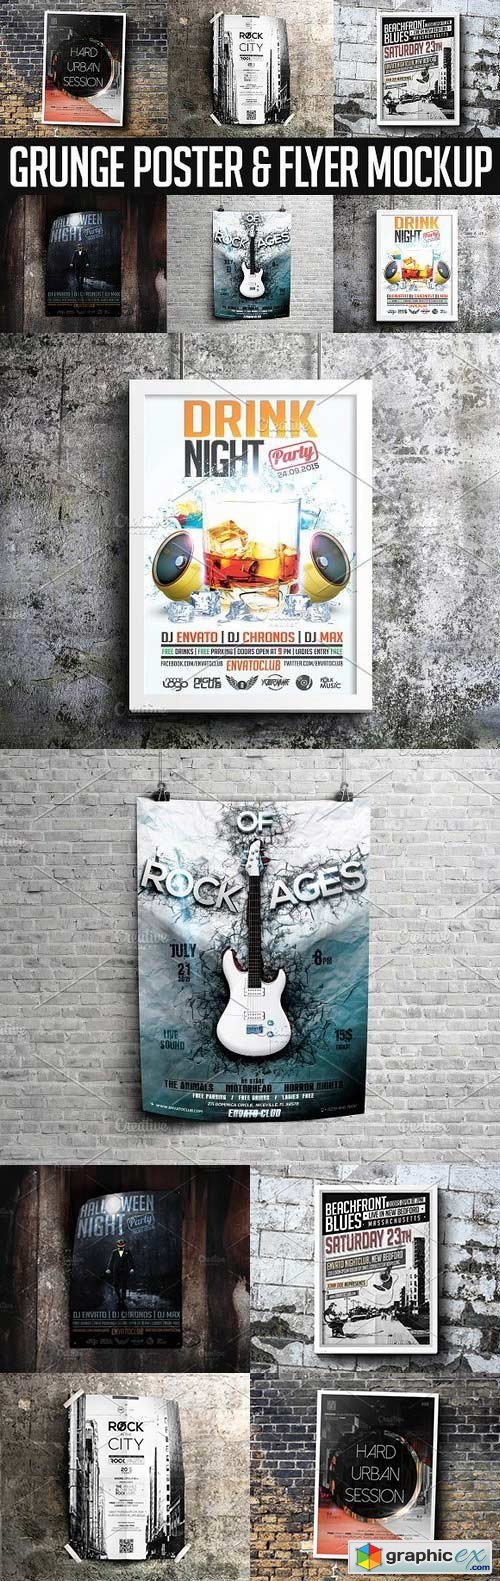 Grunge Poster & Flyer Mockup